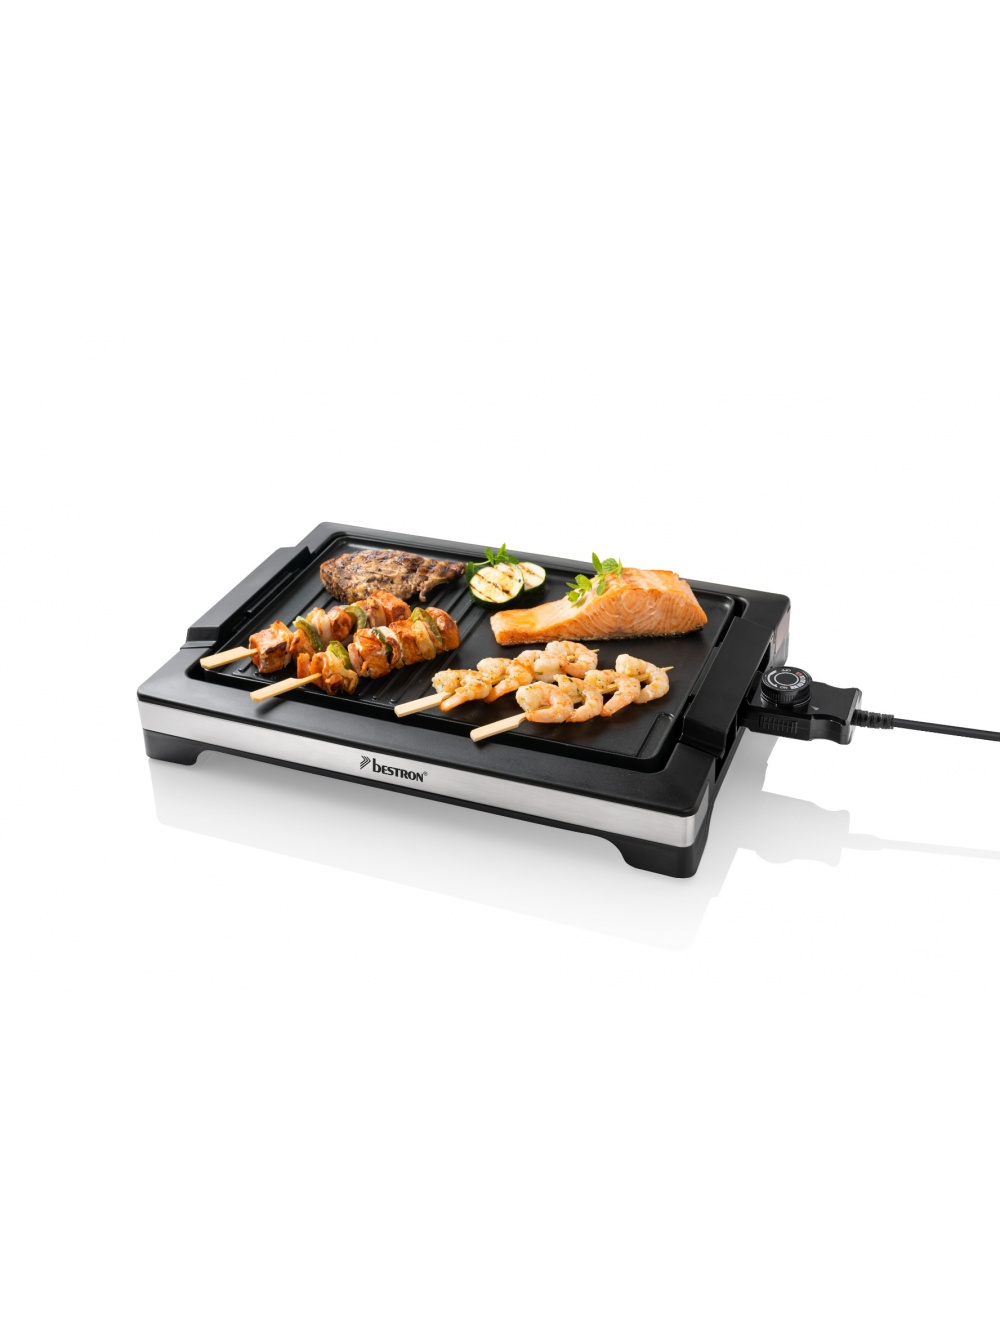 ABBQ2000S Tafelmodel barbecue grill